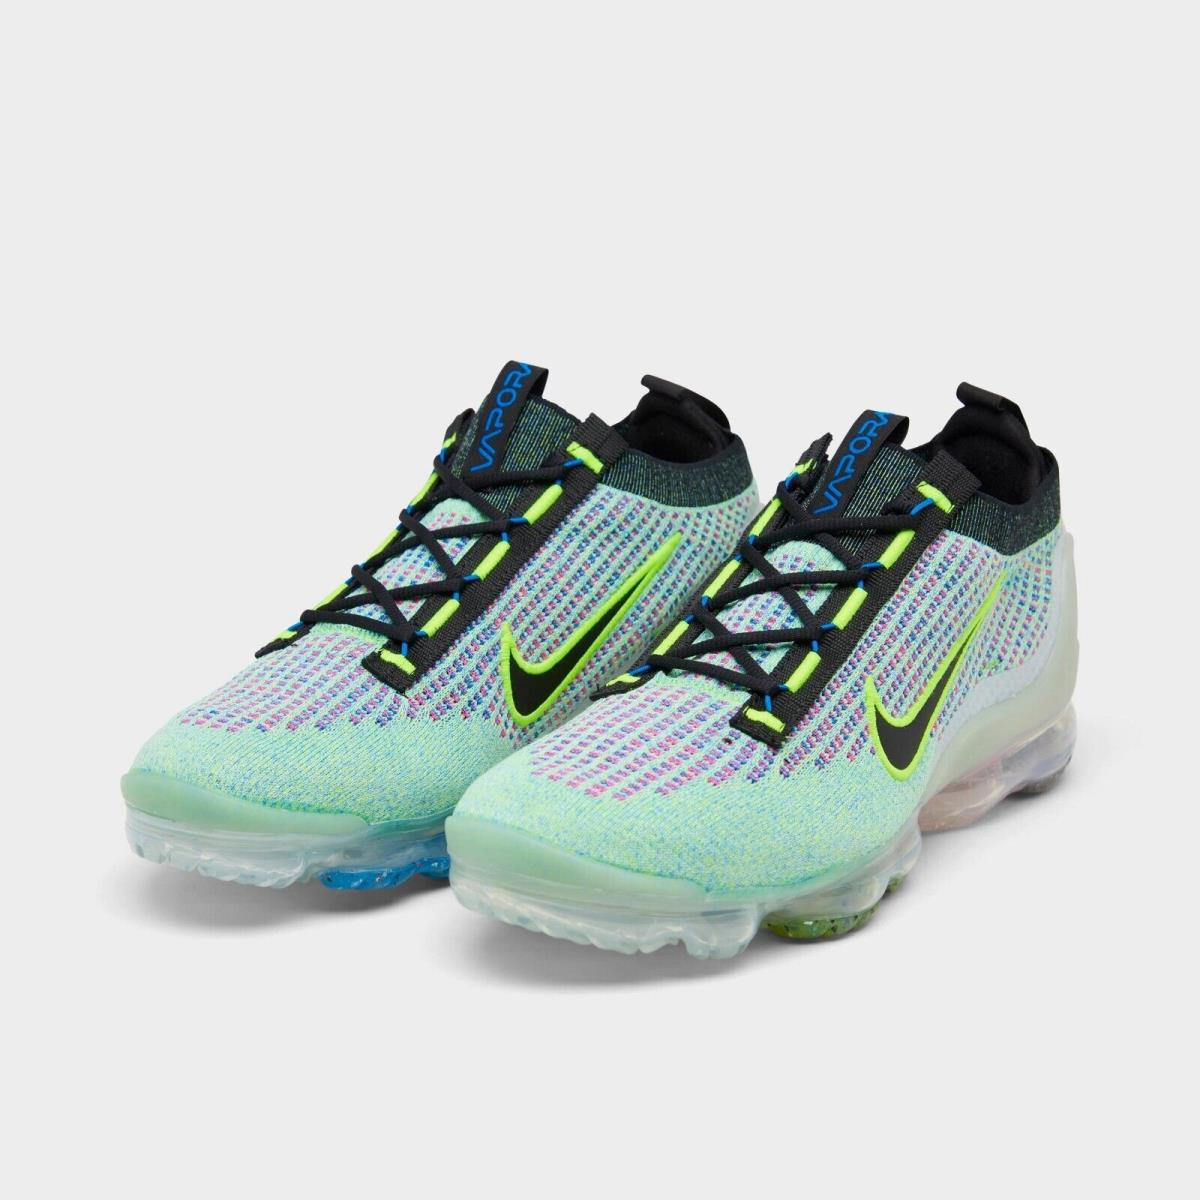 Nike Air Vapormax 2021 Flyknit Running Shoes Volt / Blue / Sil Sz 8.5 DX3368 700